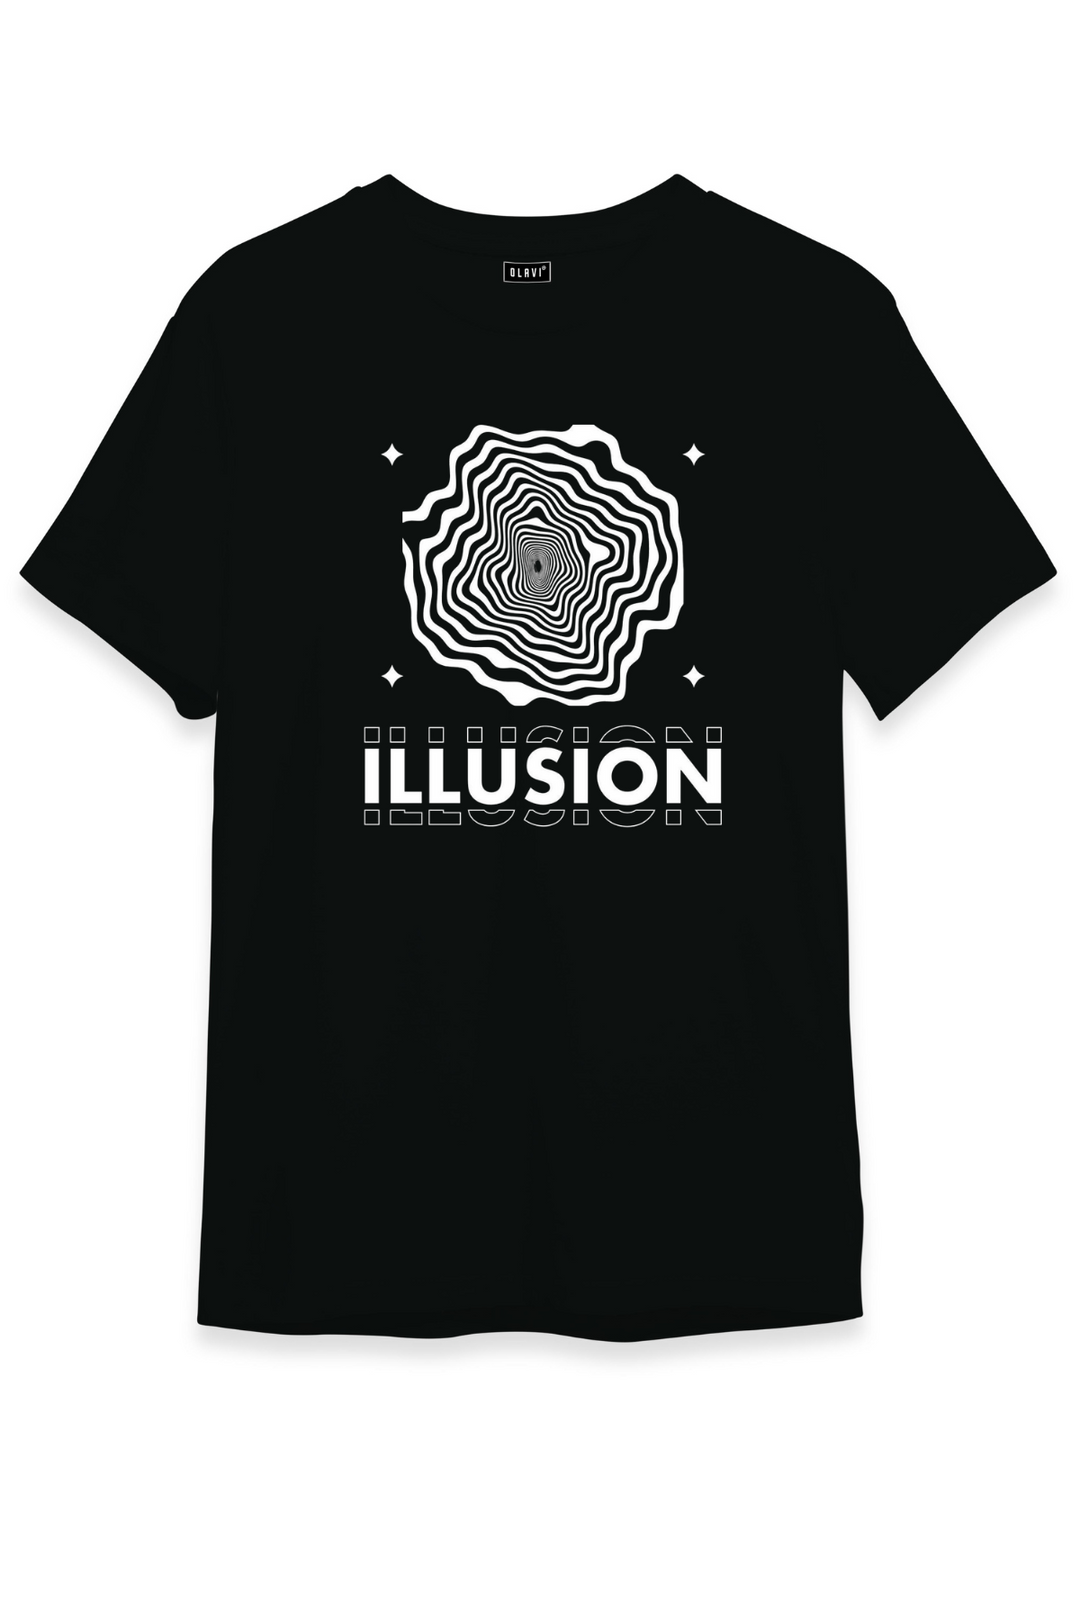 ILLUSION - Printed Half sleeves T- Shirt